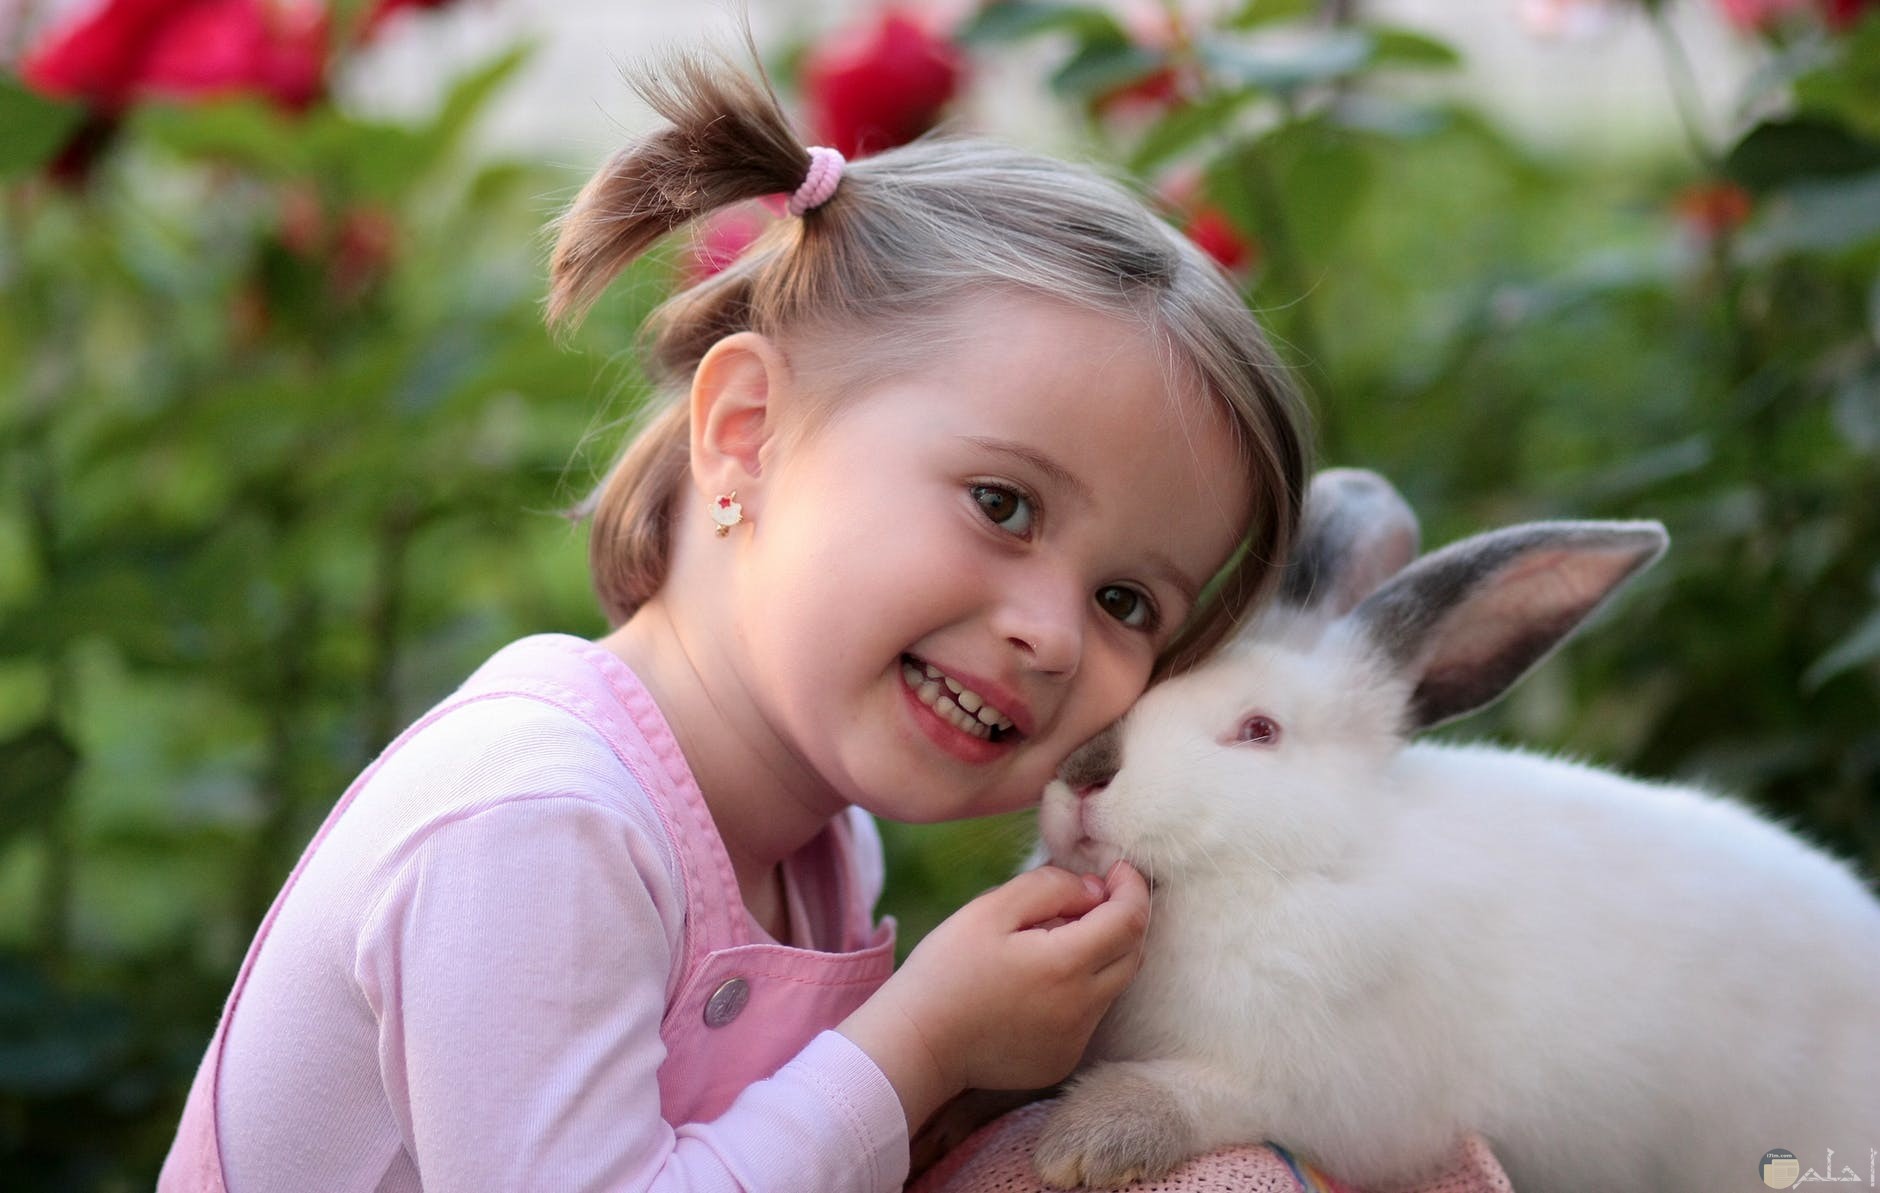 طفلة صغيرة بجوار ارنب